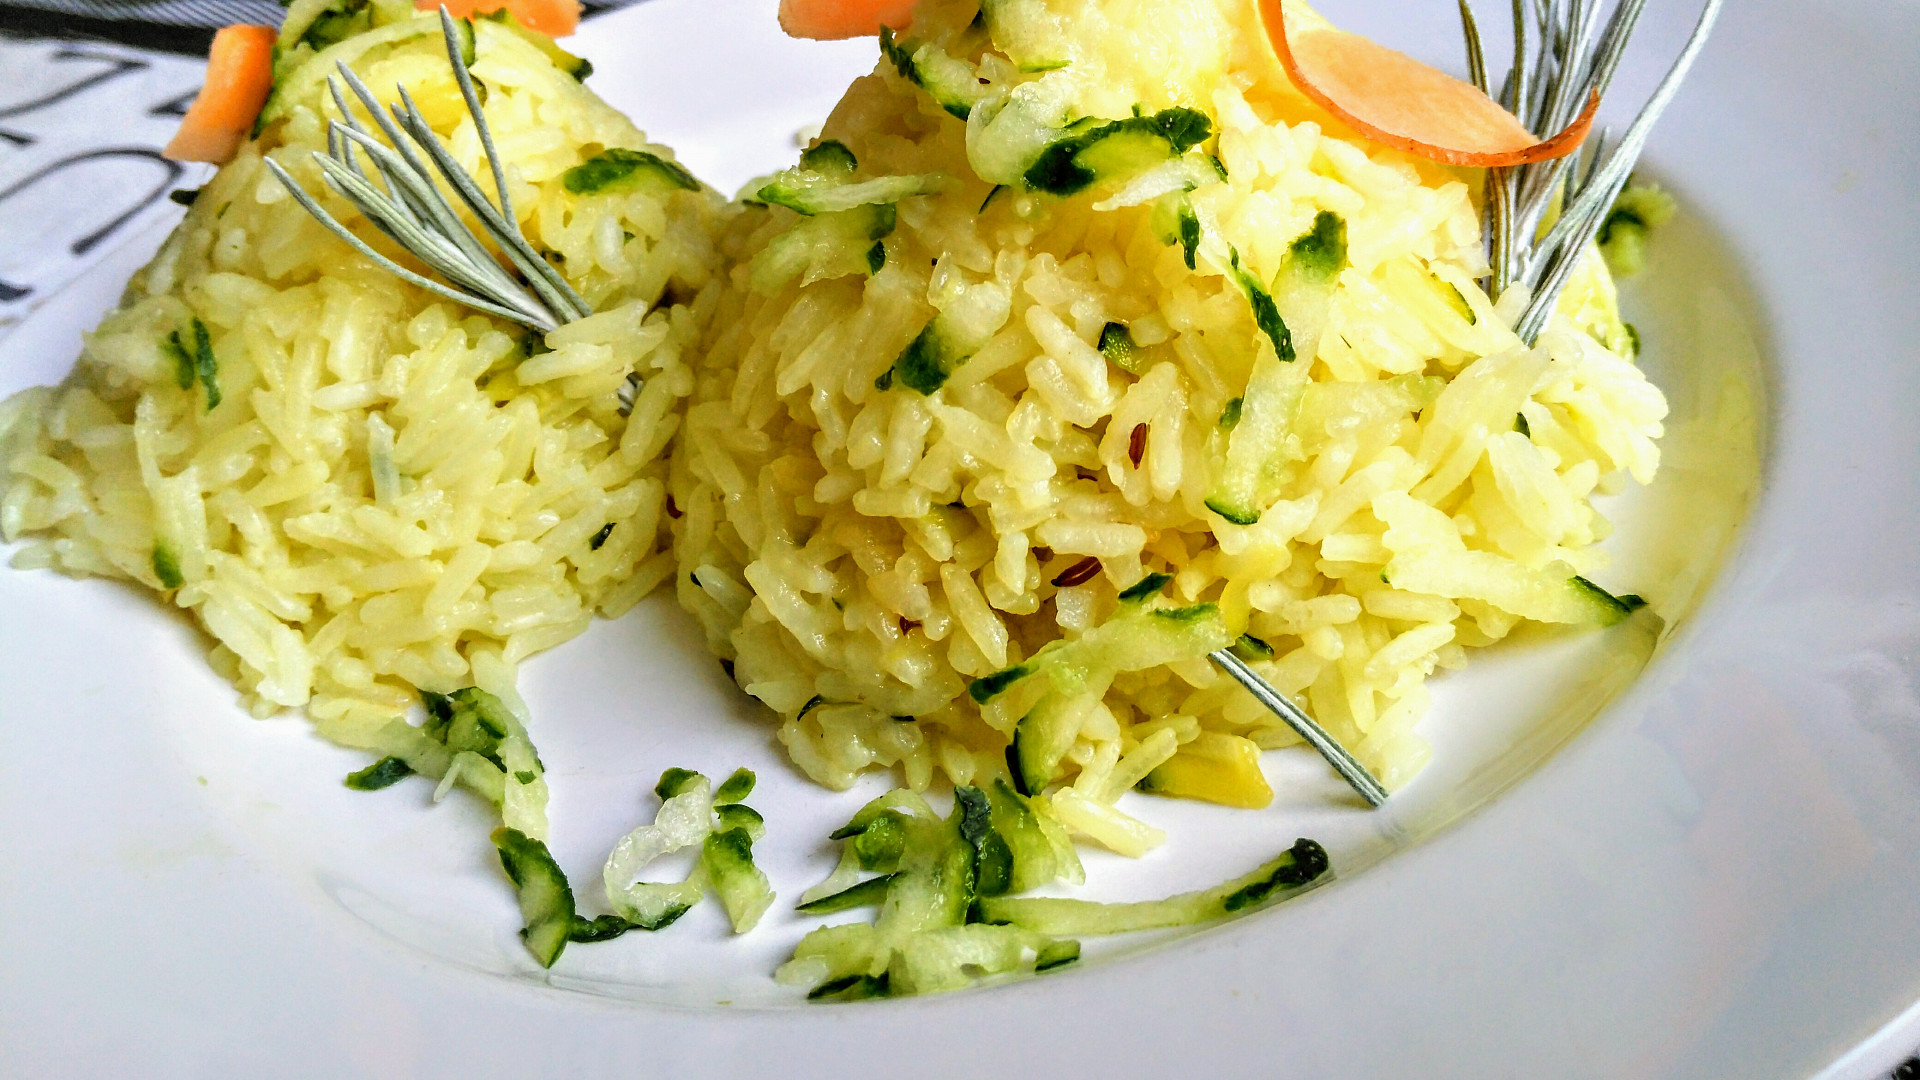 Cuketová rýže s mrkví